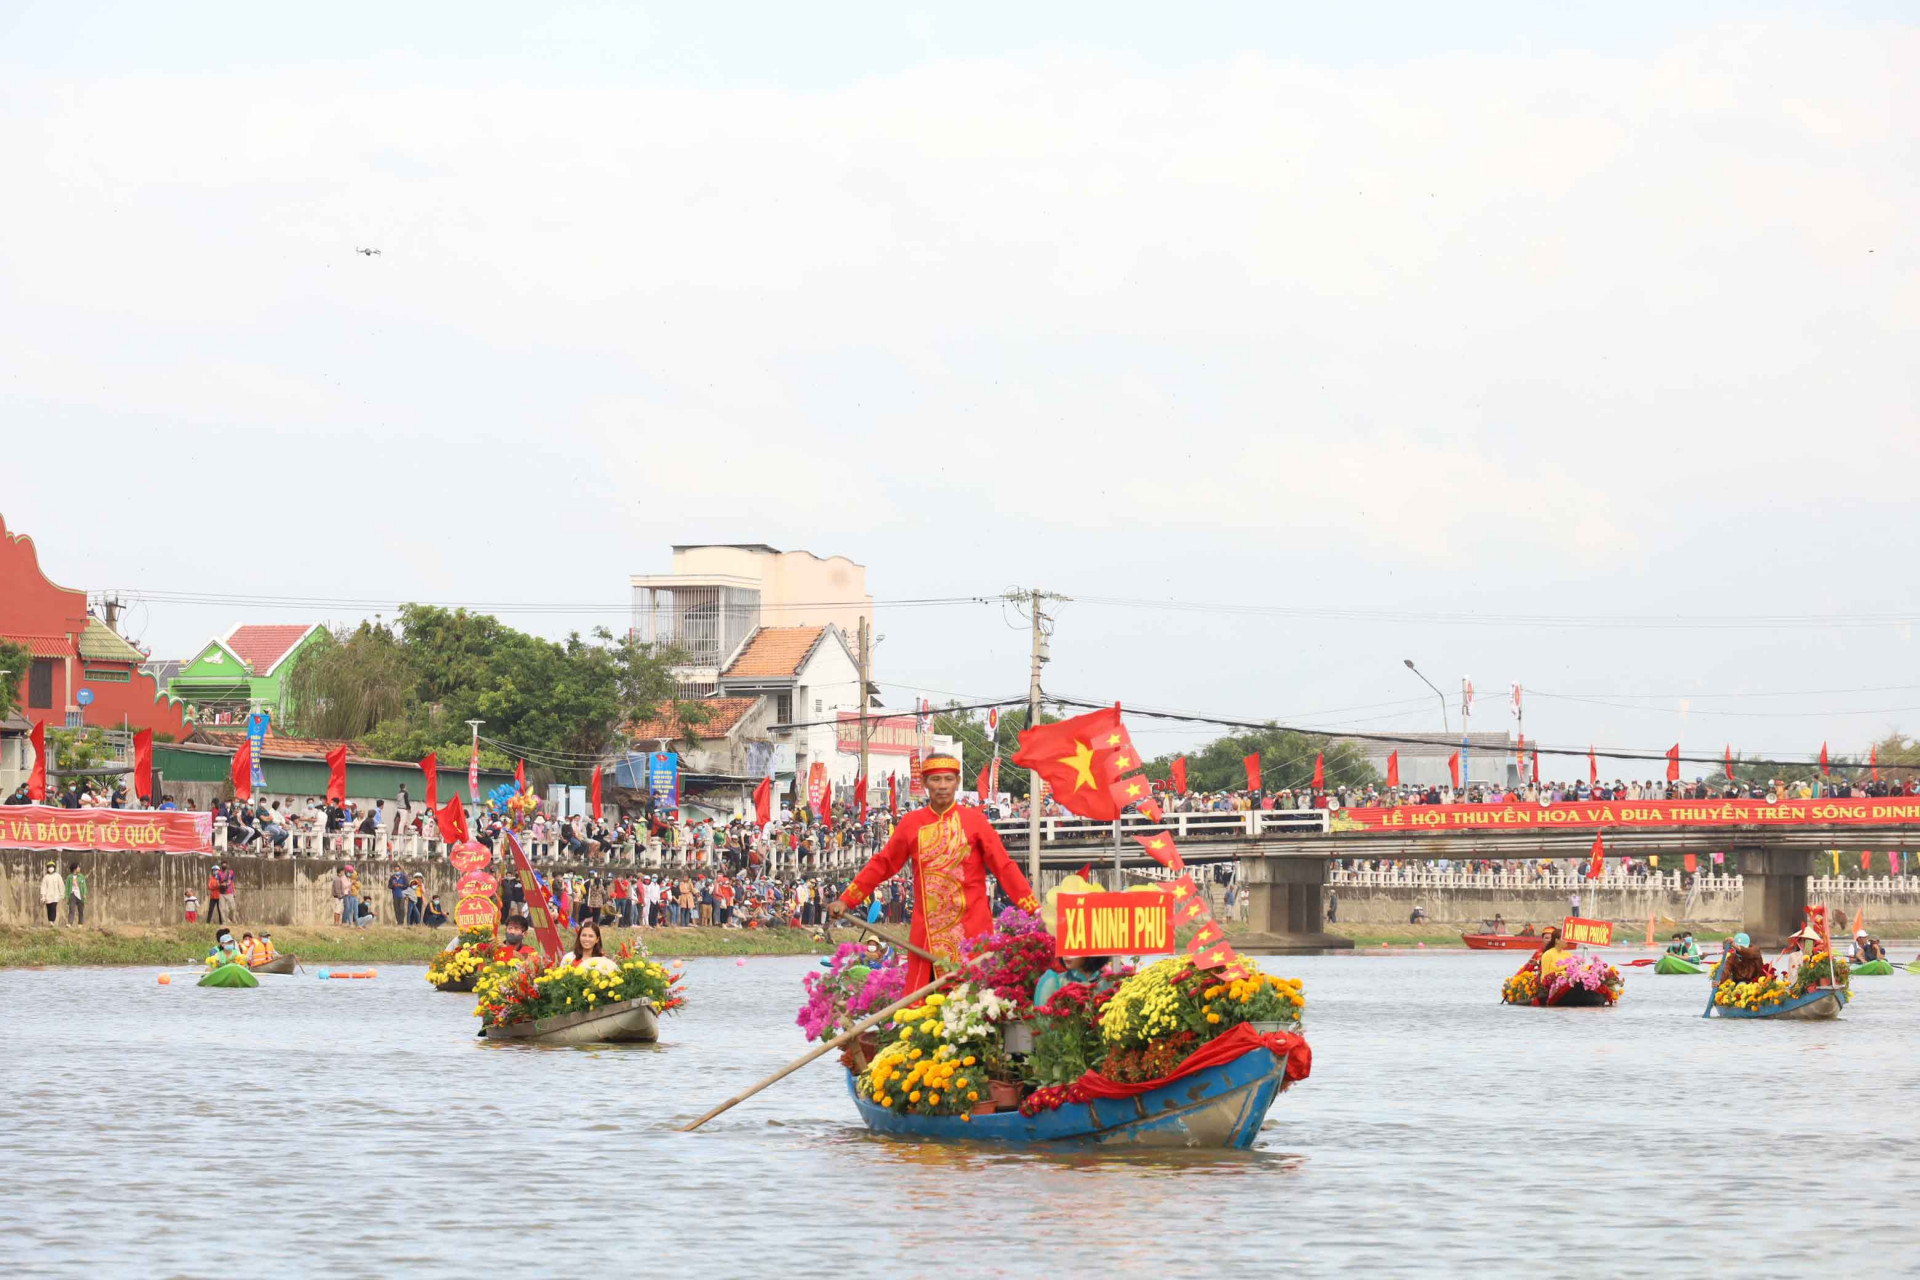 Hình ảnh lễ hội thuyền hoa và đua thuyền trên sông Dinh năm 2021. 